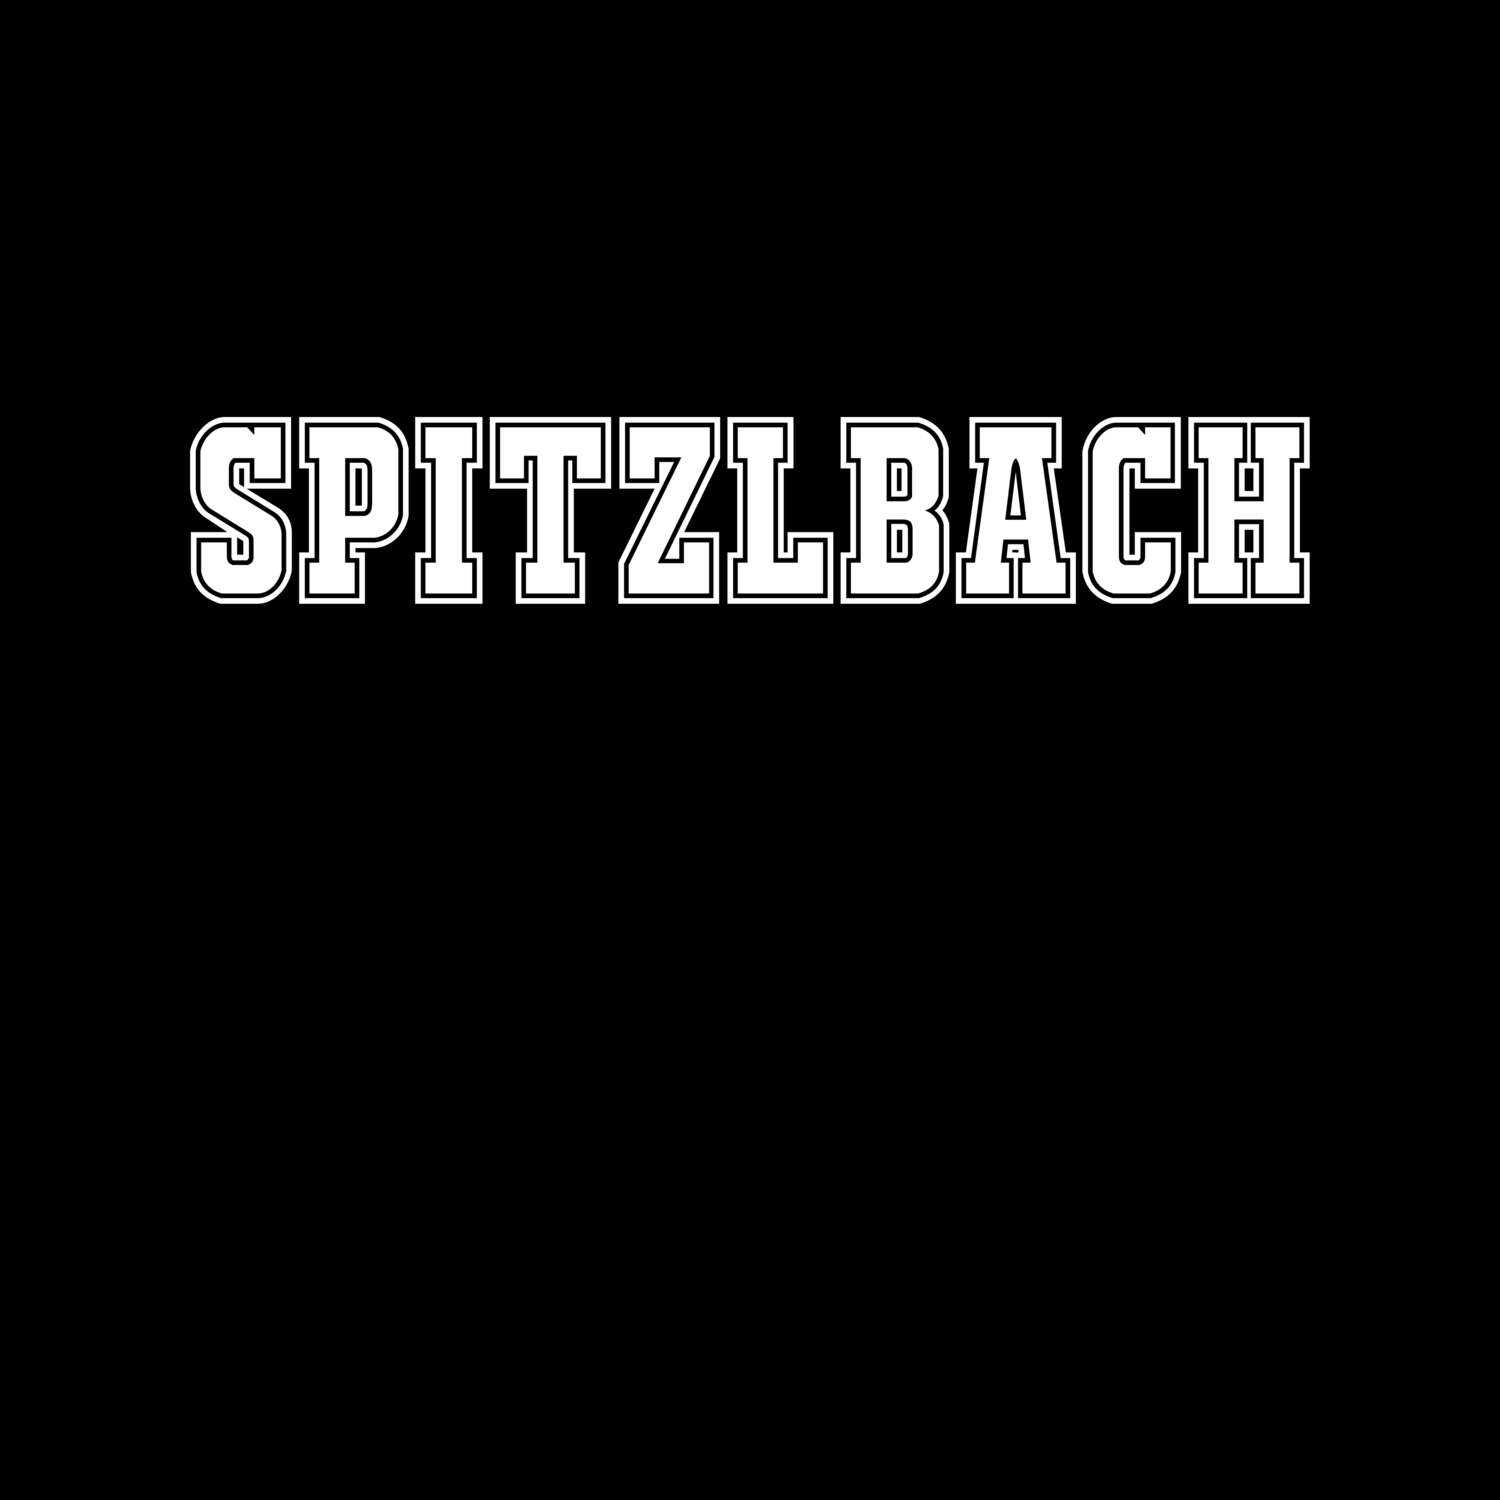 Spitzlbach T-Shirt »Classic«